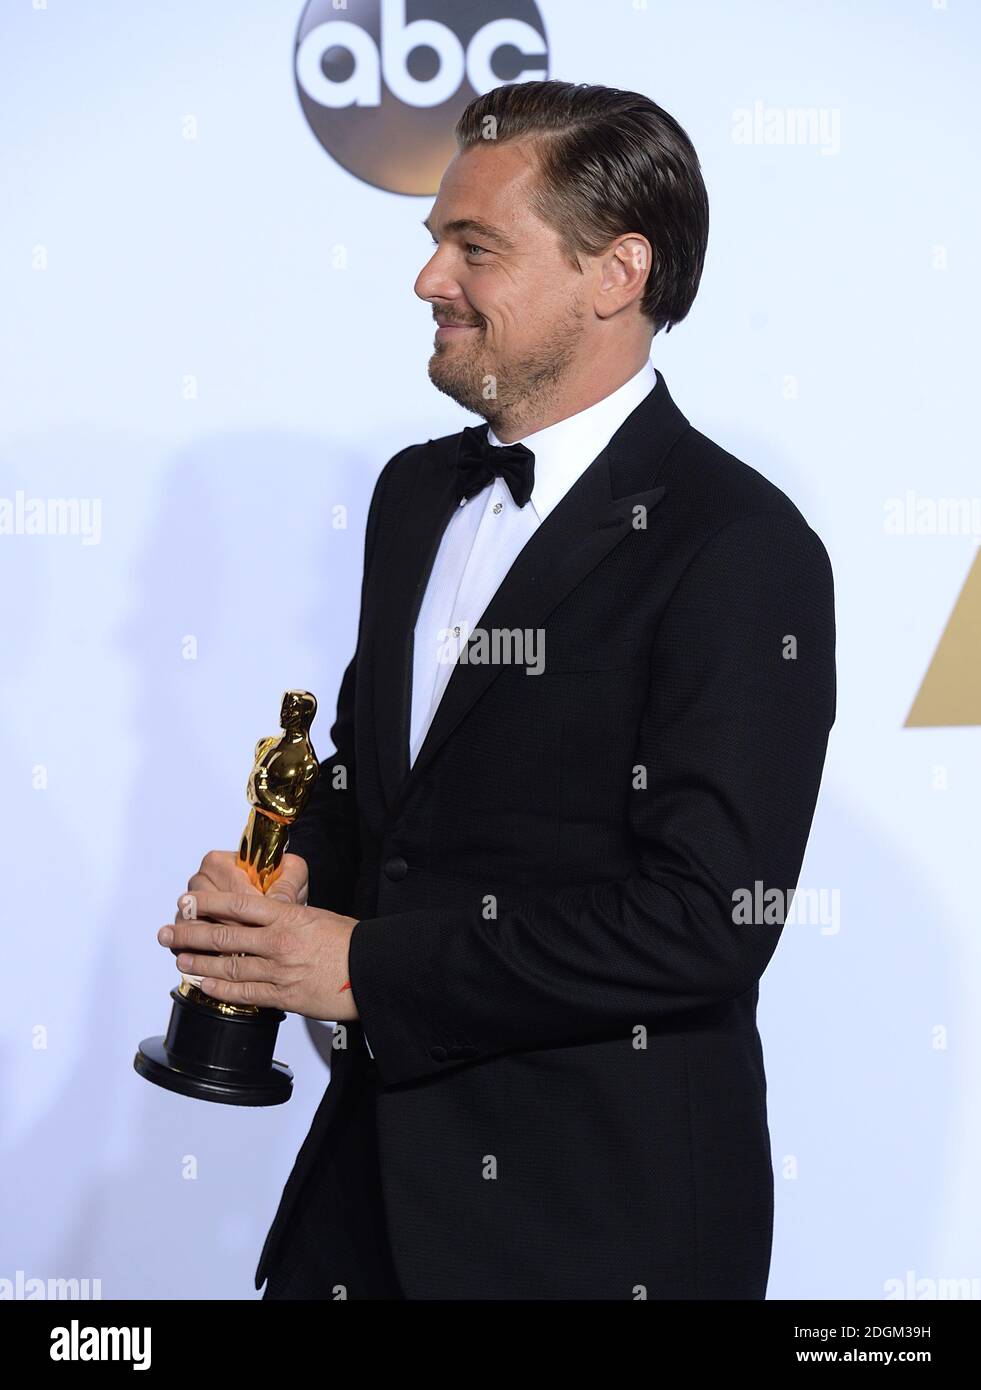 Leonardo DiCaprio con el Oscar al mejor actor por 'The Revenant' en la sala de prensa de los 88º Oscar celebrados en el Dolby Theatre de Hollywood, los Angeles, CA, EE.UU., 28 de febrero de 2016. Foto de stock